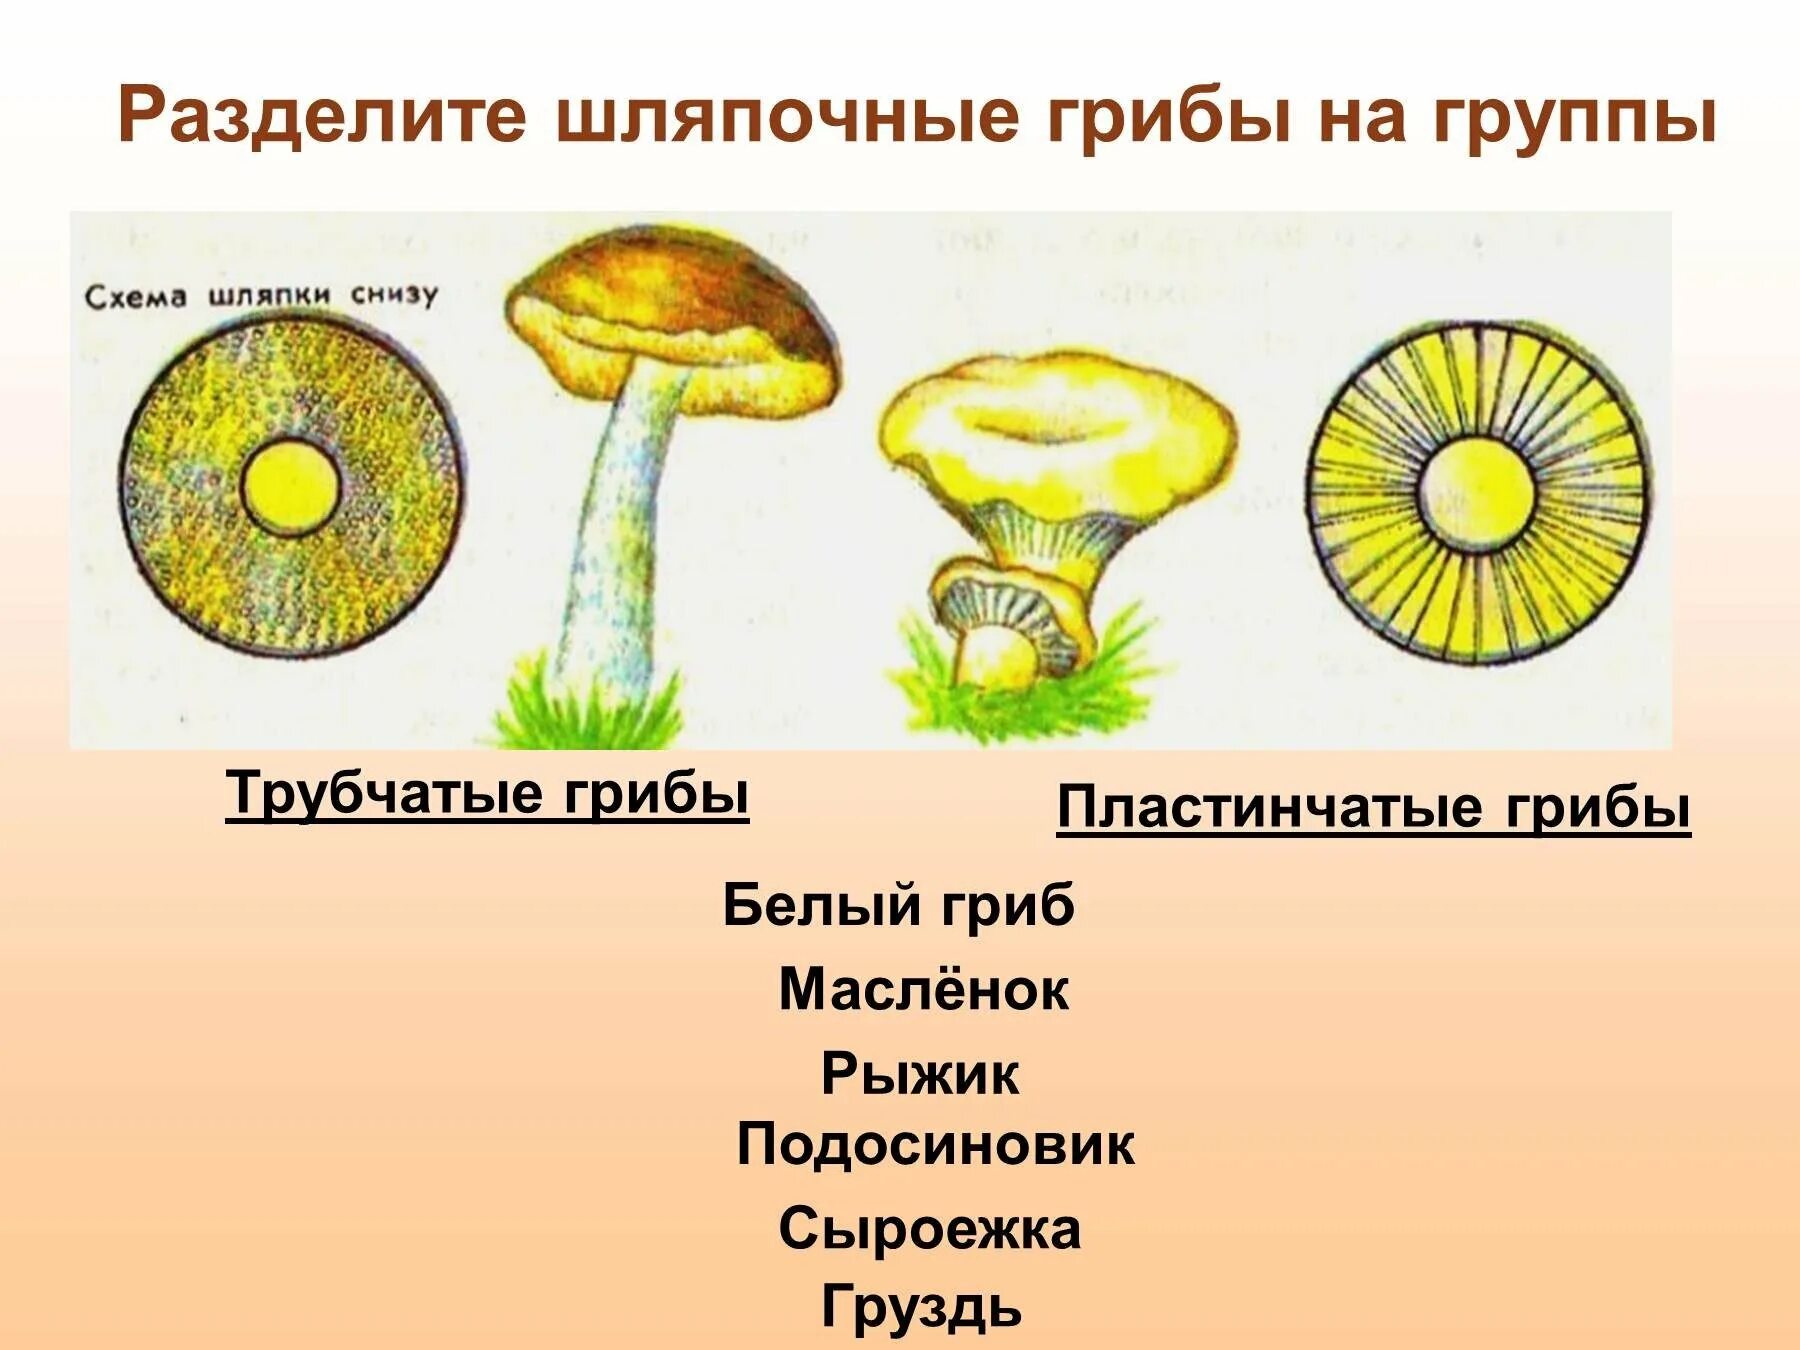 Шляпочные грибы состоят из шляпки. Шляпочные грибы трубчатые и пластинчатые. Трубчатые Шляпочные грибы Рыжик. Трубчатые и пластинчатые грибы 5 класс биология. Трубчатые Шляпочные грибы масленок.